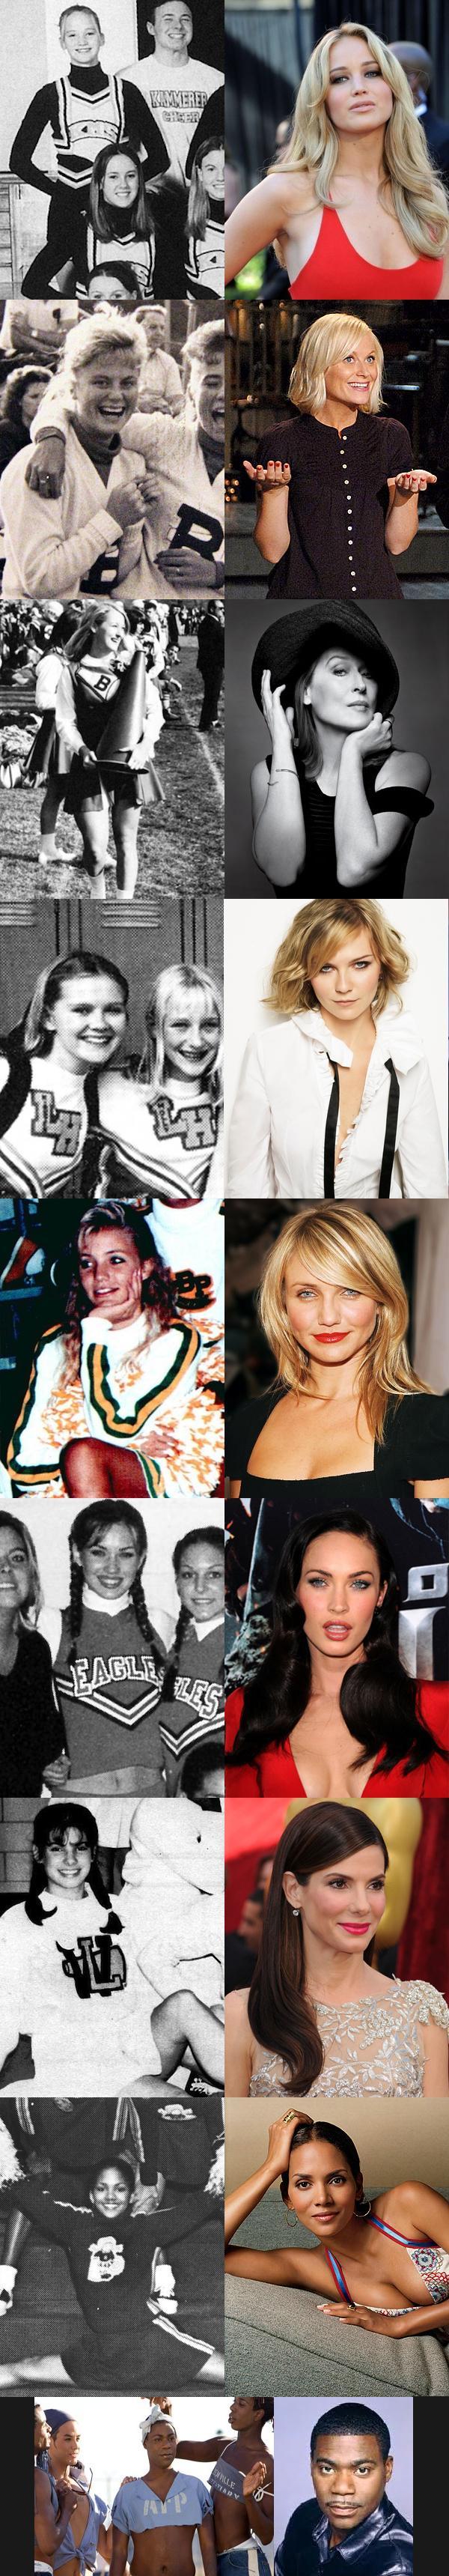 famous cheerleaders actresses